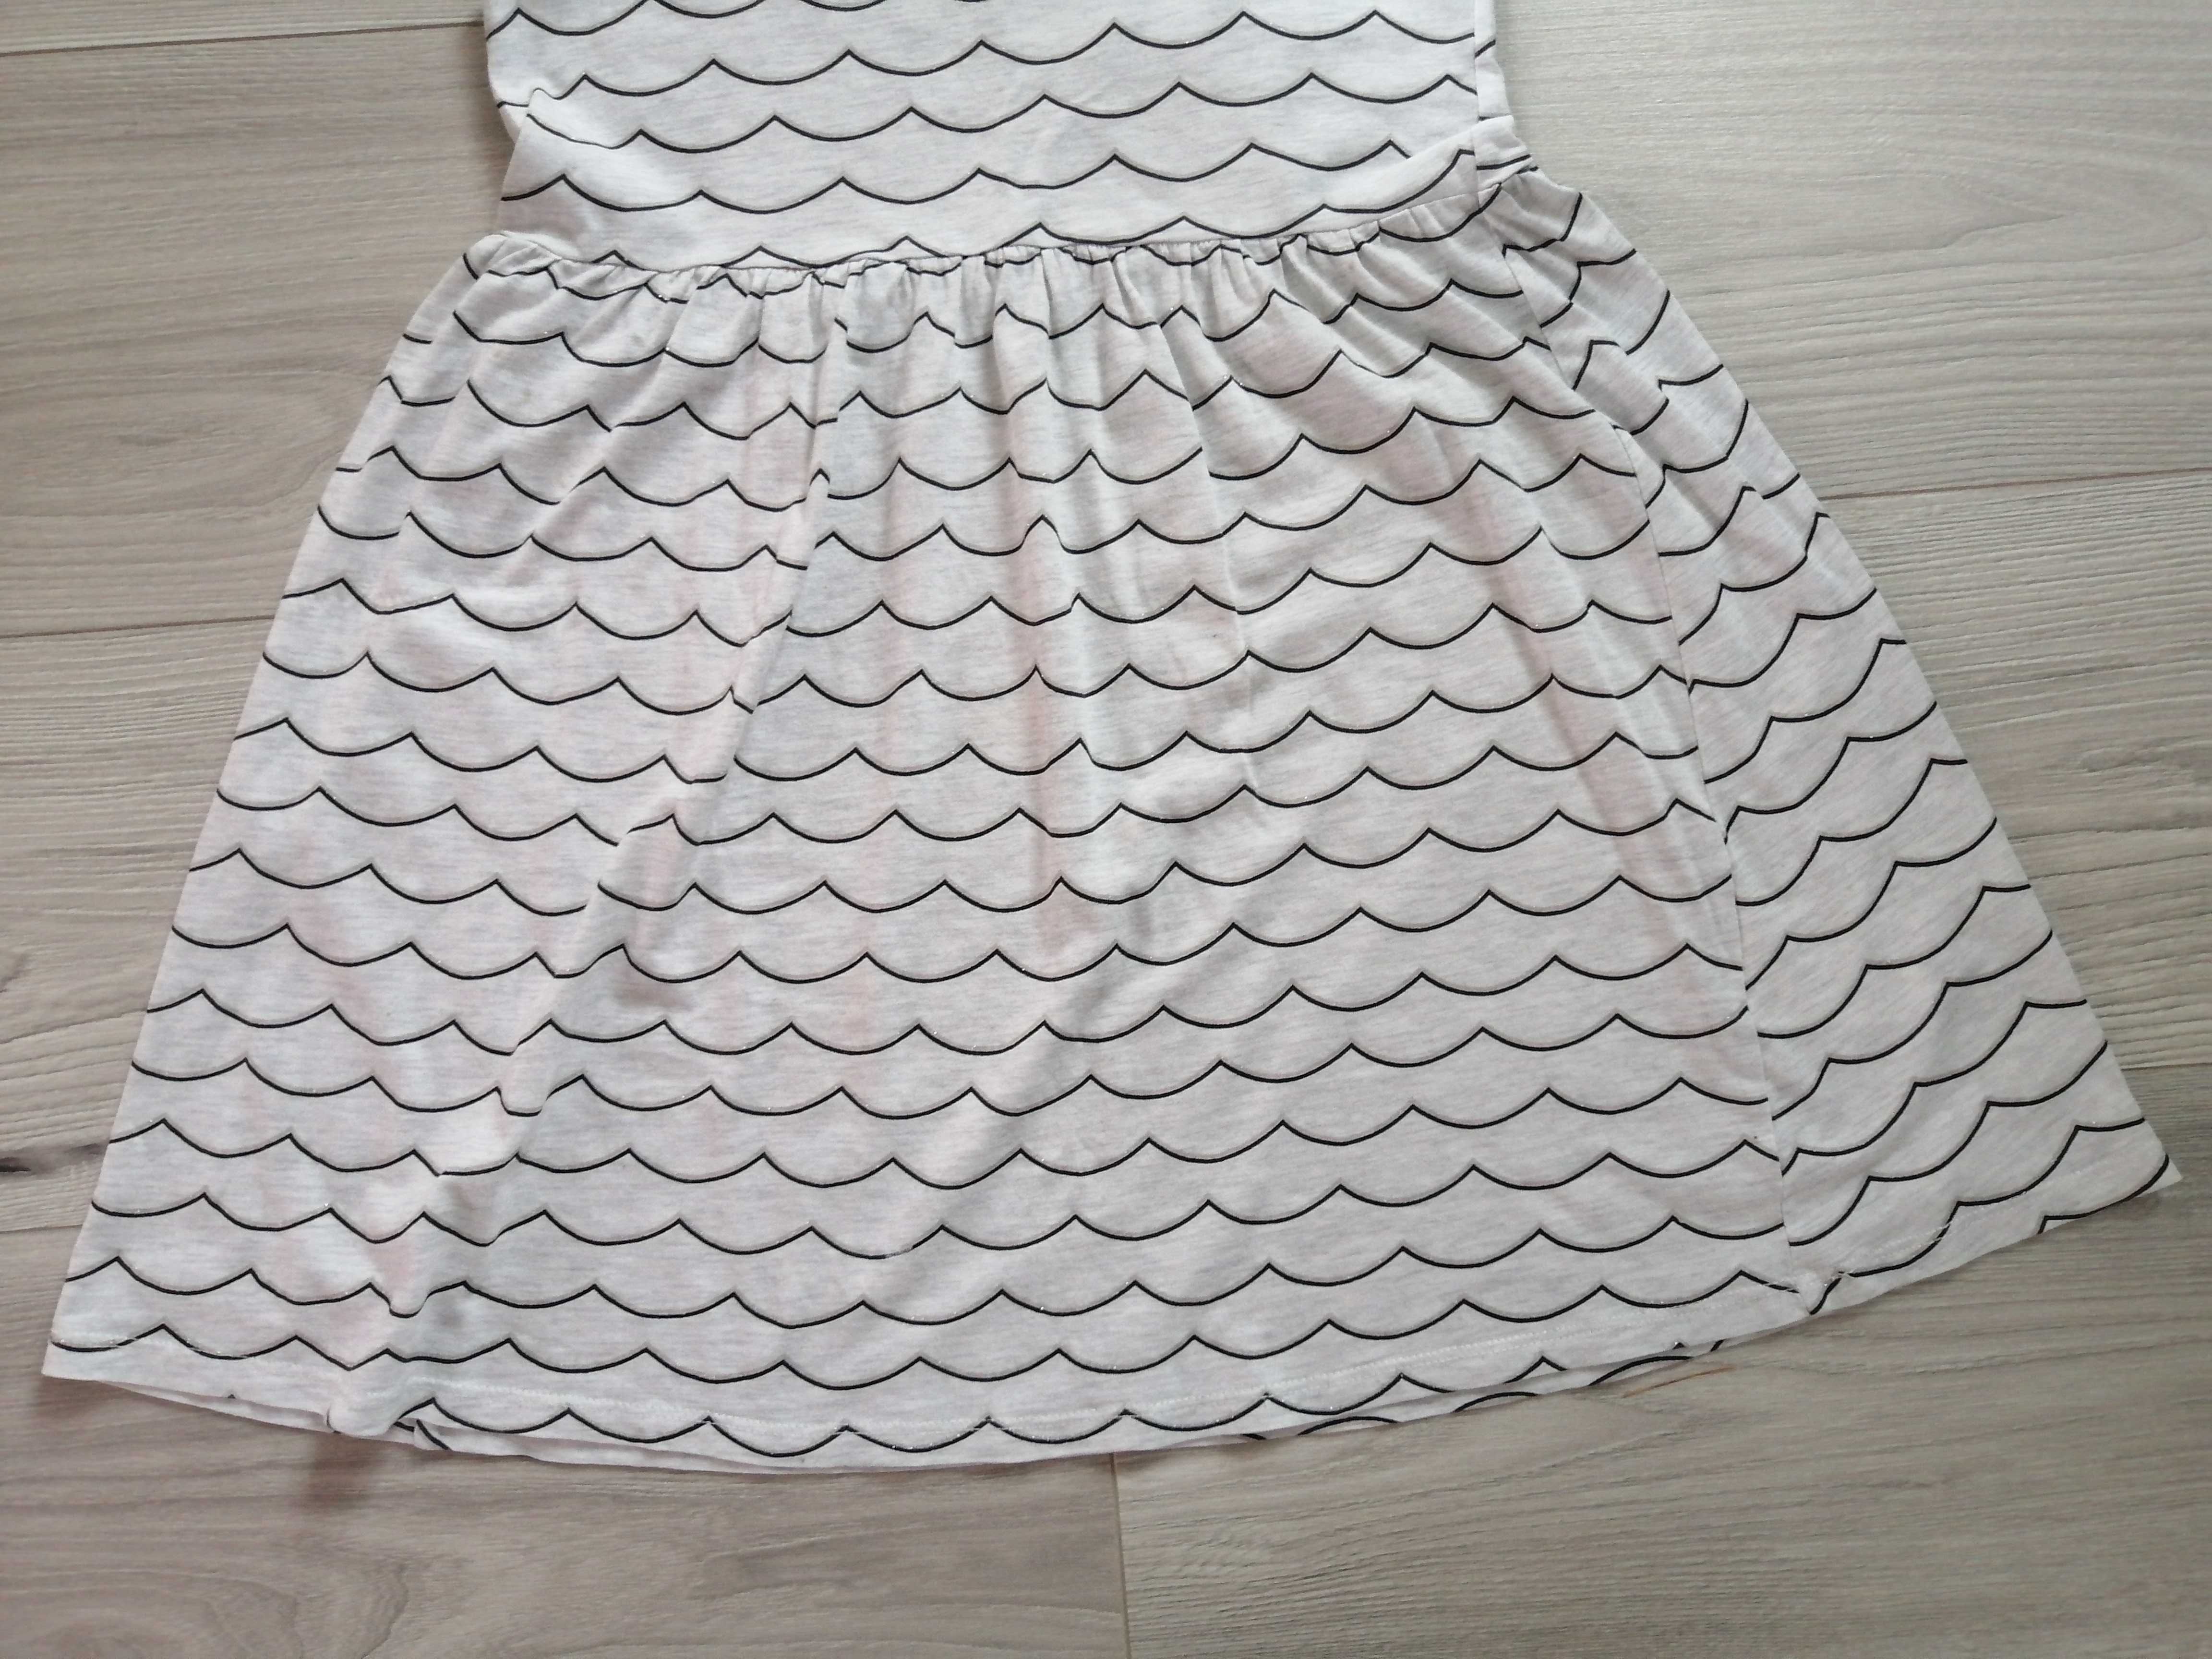 Sukienka z kr. rękawem firmy H&M dla dziewczynki, rozmiar 122/128cm